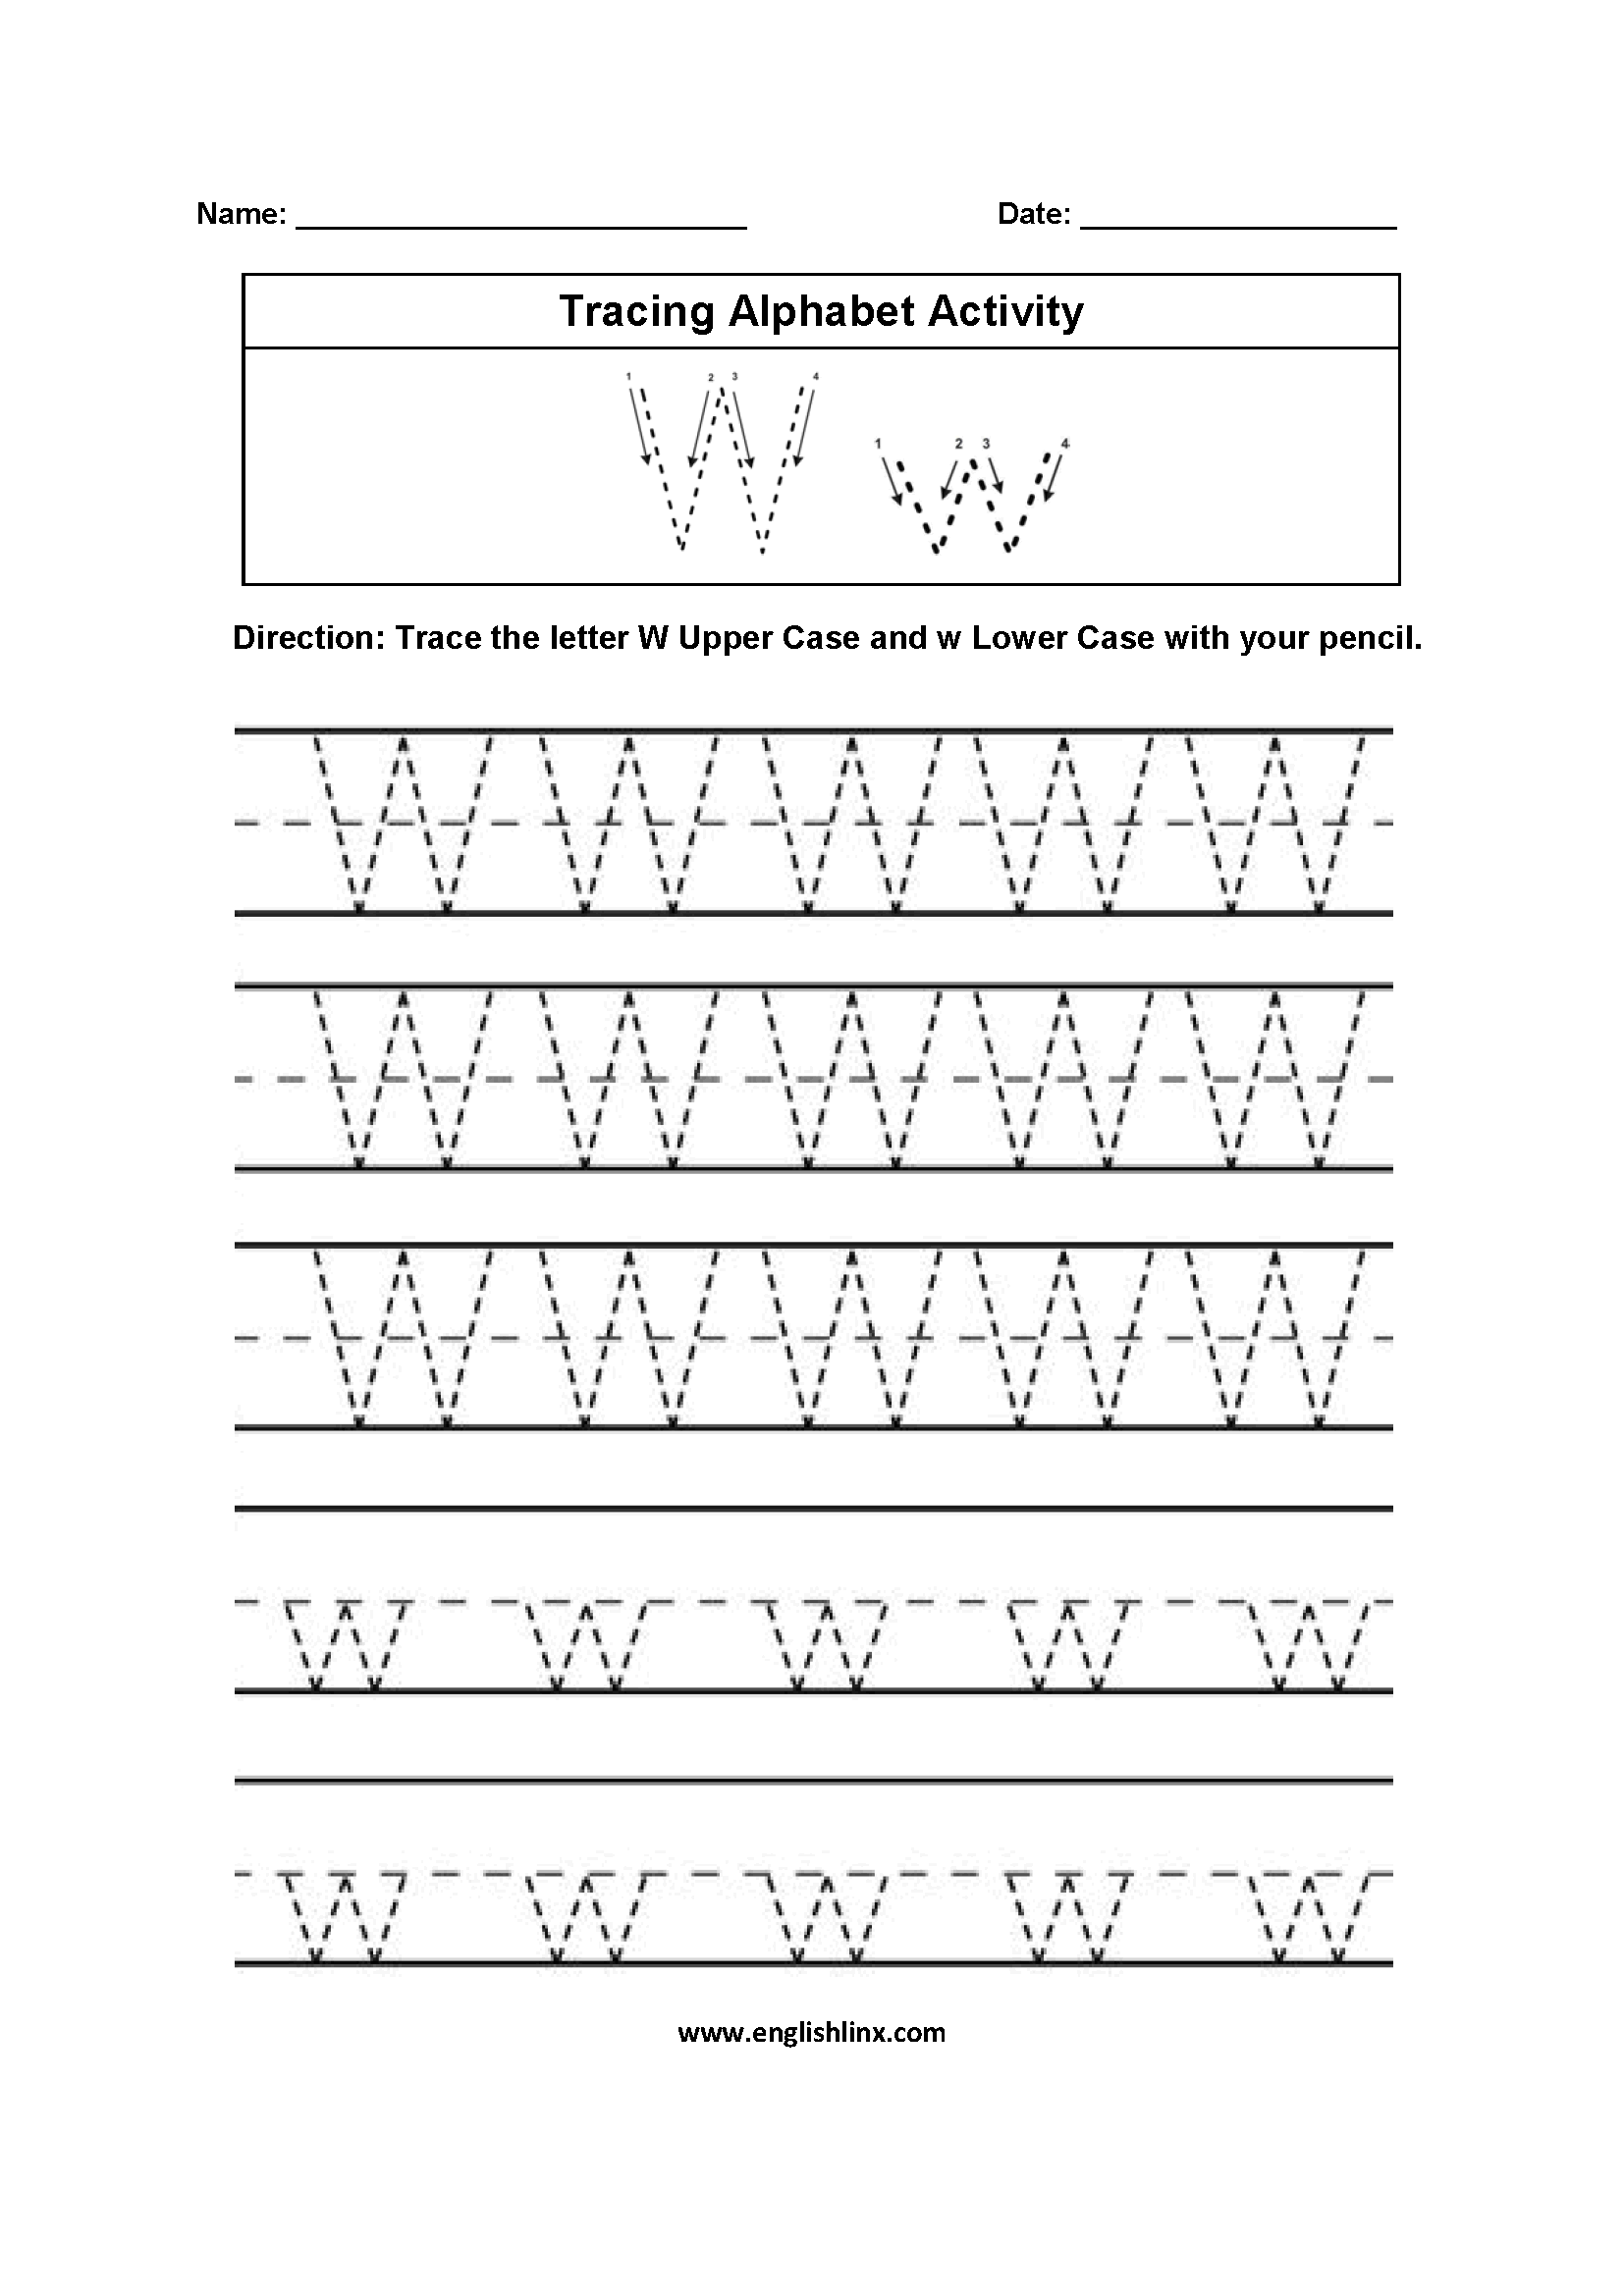 Alphabet Worksheets | Tracing Alphabet Worksheets regarding Letter W Worksheets For Grade 2